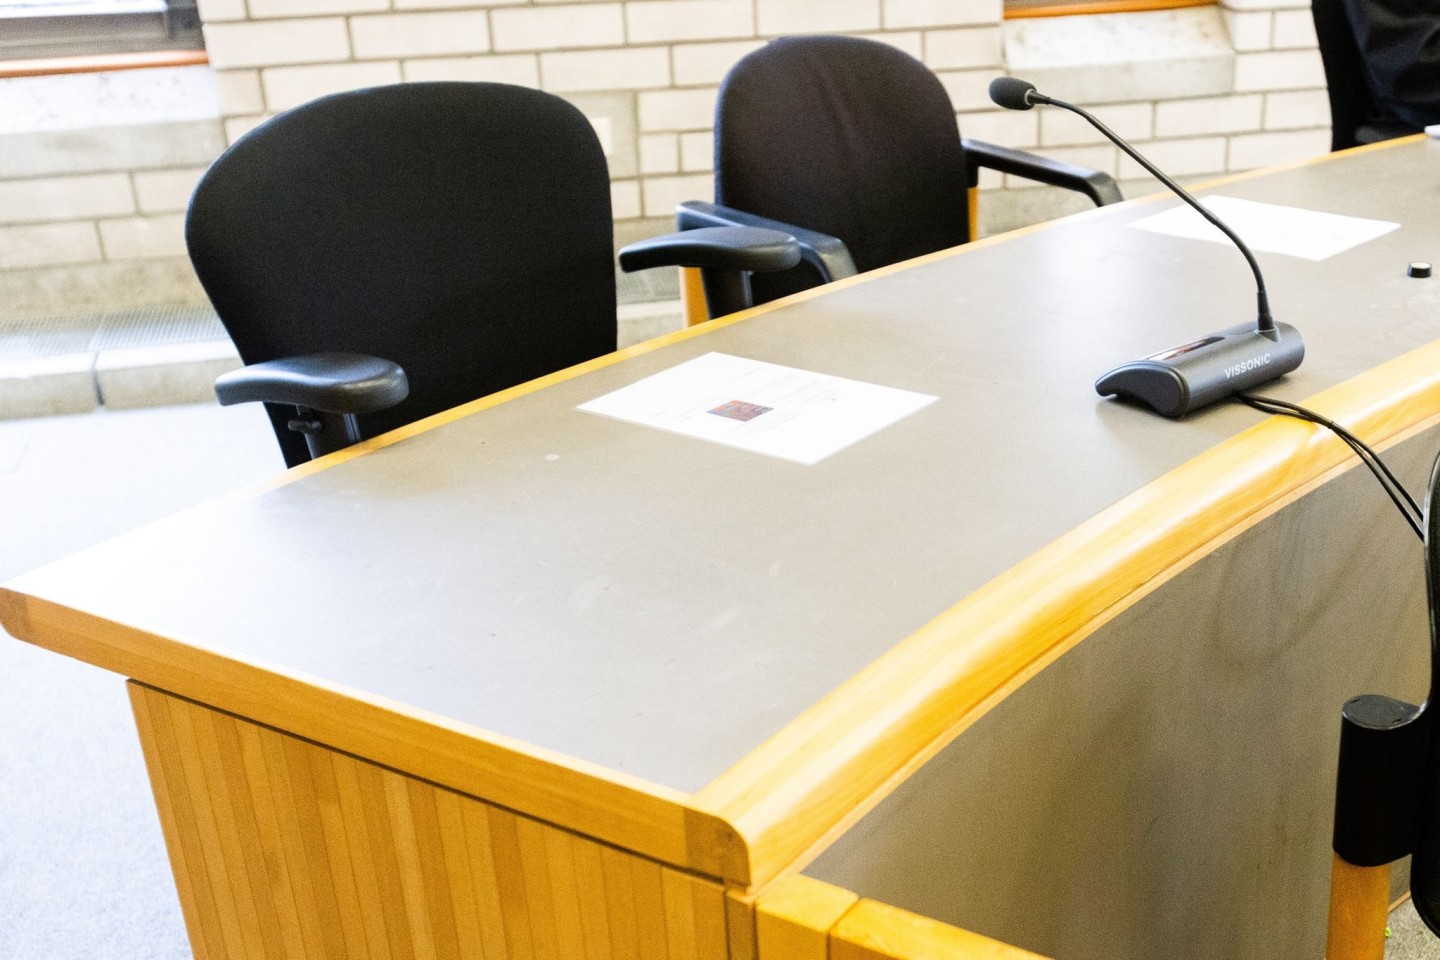 2018 war ein Schwimmlehrer vom Landgericht Baden-Baden wegen schweren sexuellen Missbrauchs von Kindern verurteilt worden.